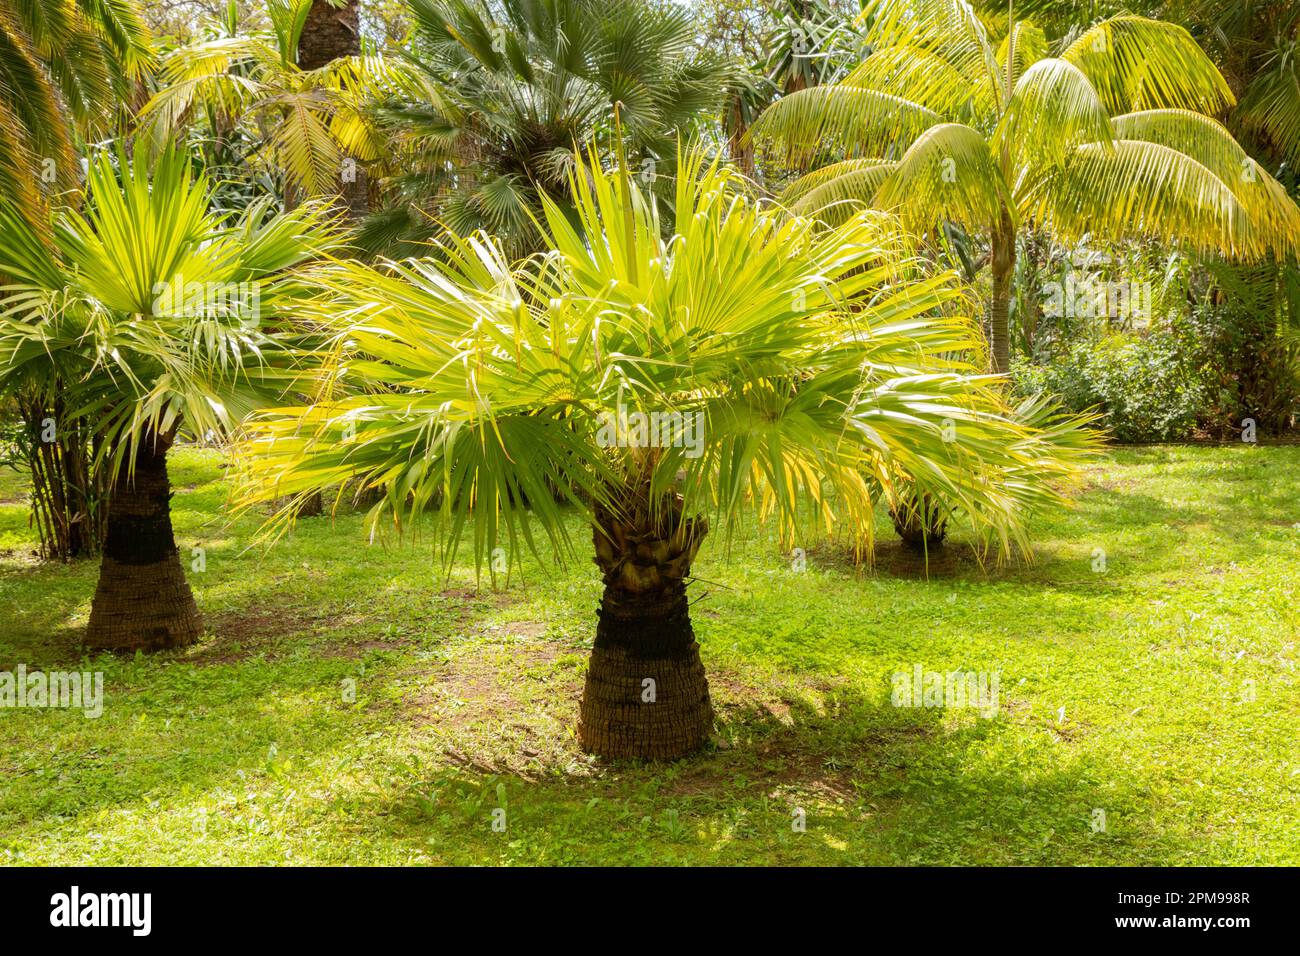 Jardins botaniques de Madère avec palmiers Banque D'Images